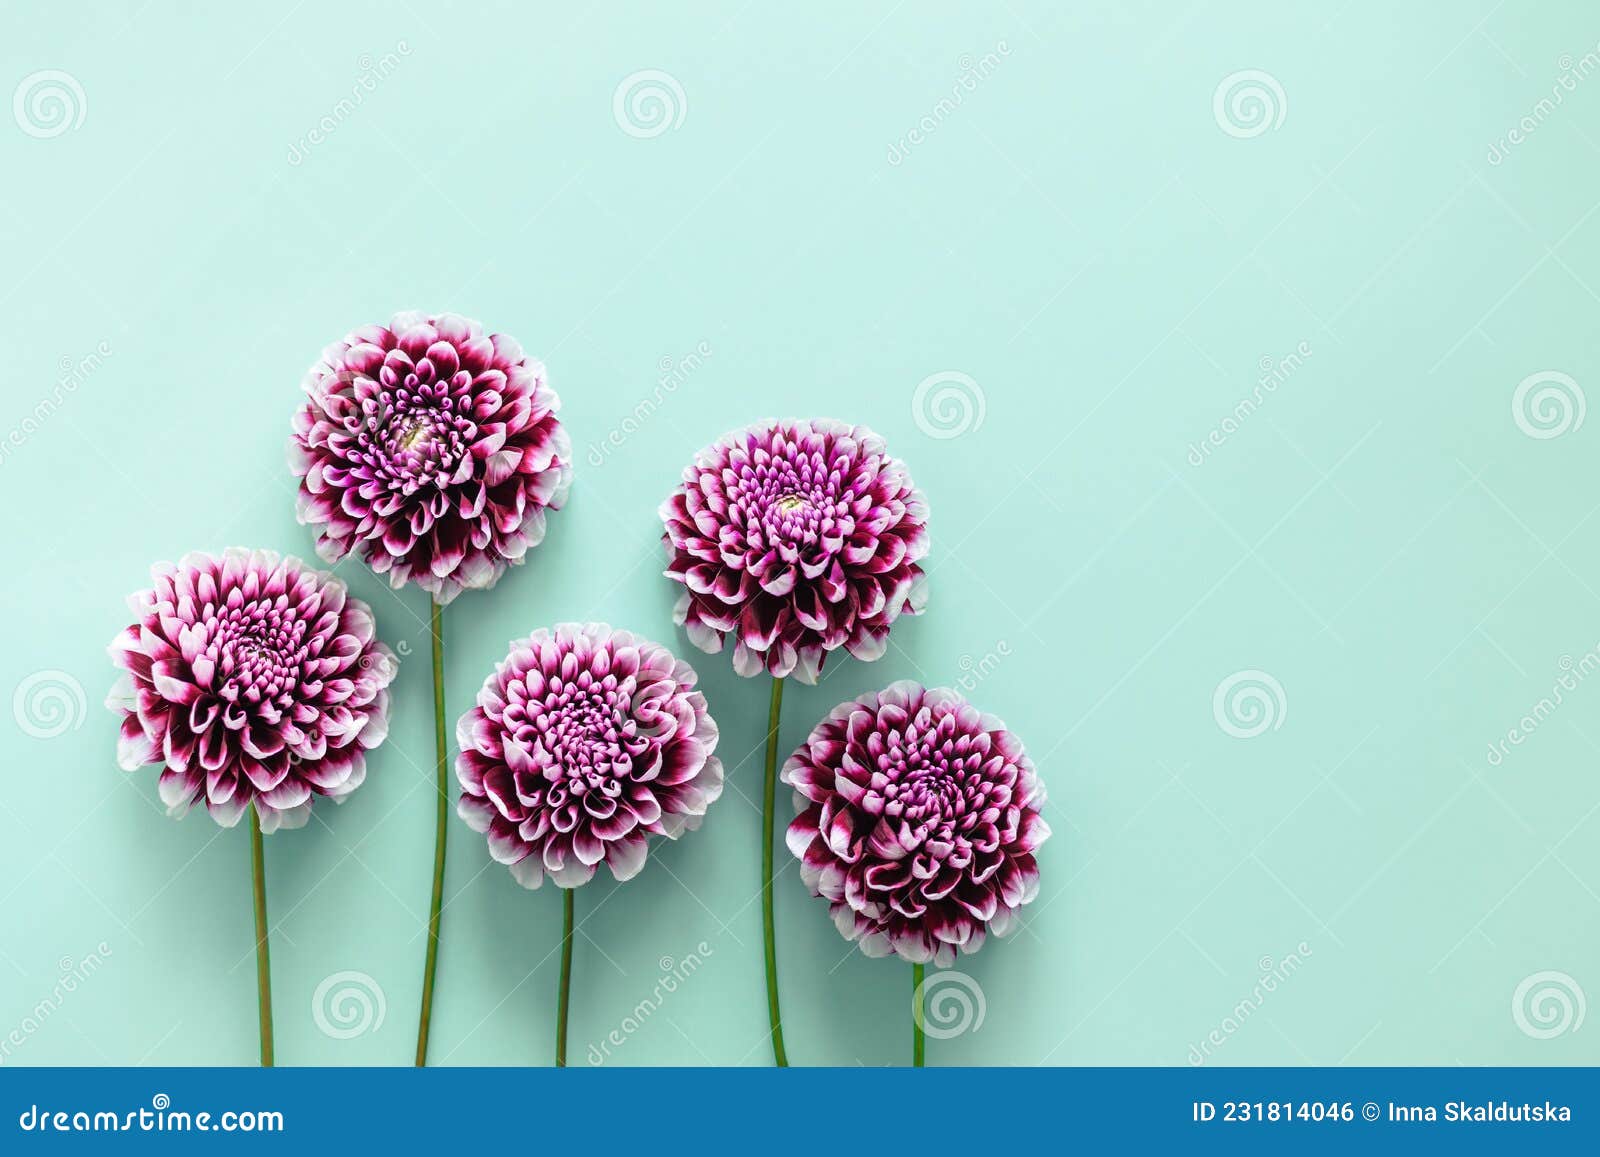 Amazing Dahlia Flowers on a Turquoise Pastel Background Stock Photo ...